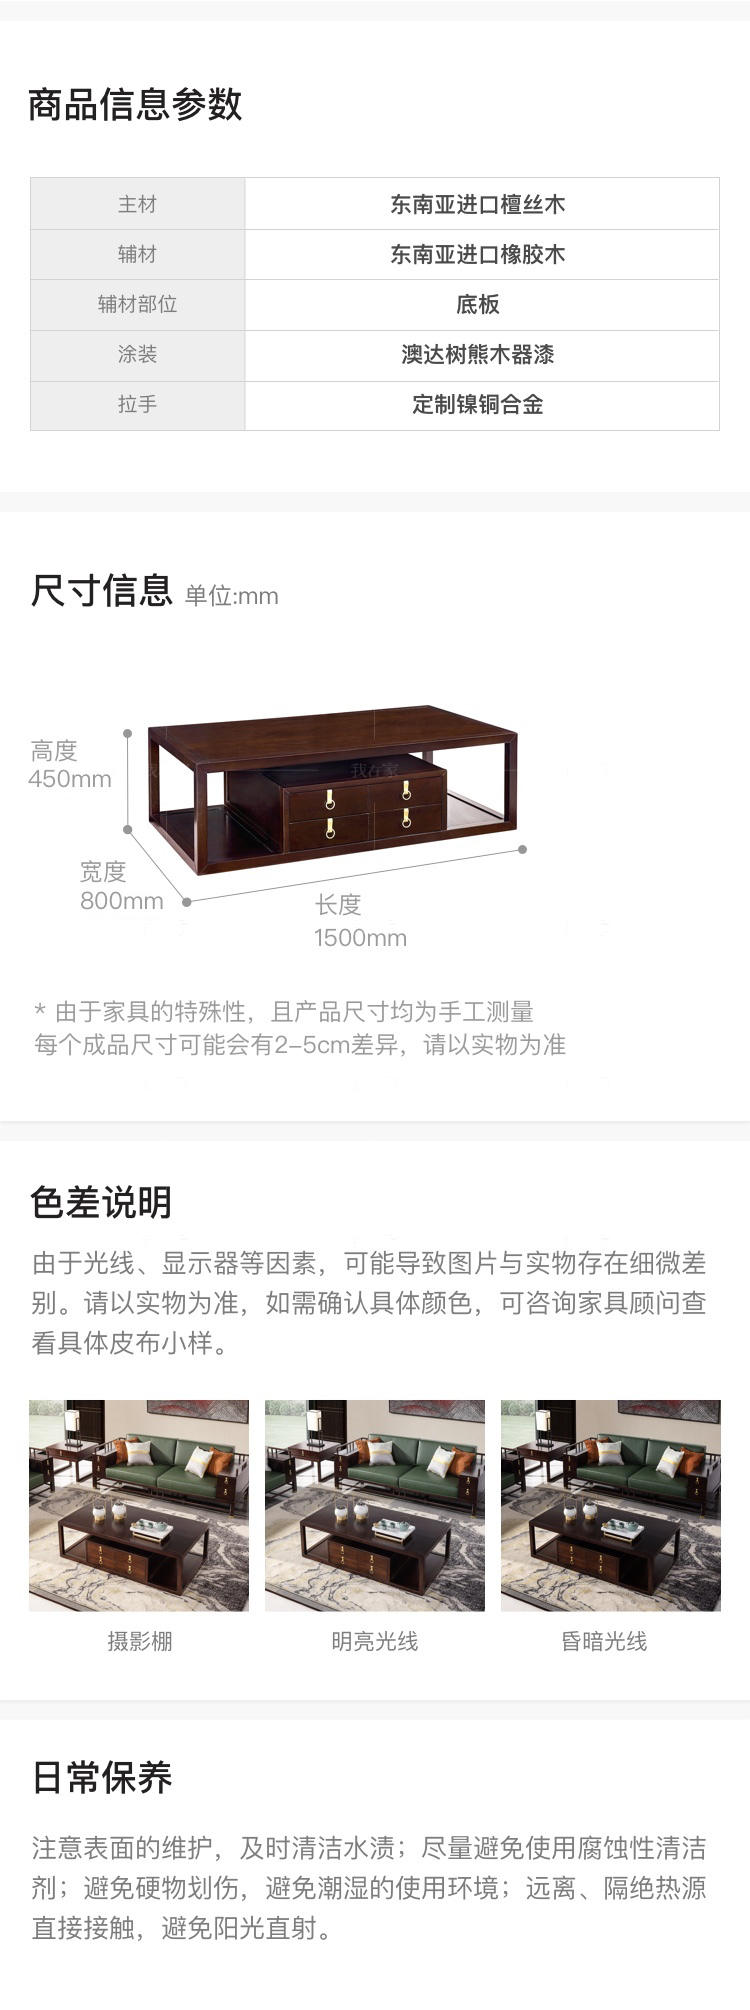 新中式风格疏影茶几的家具详细介绍